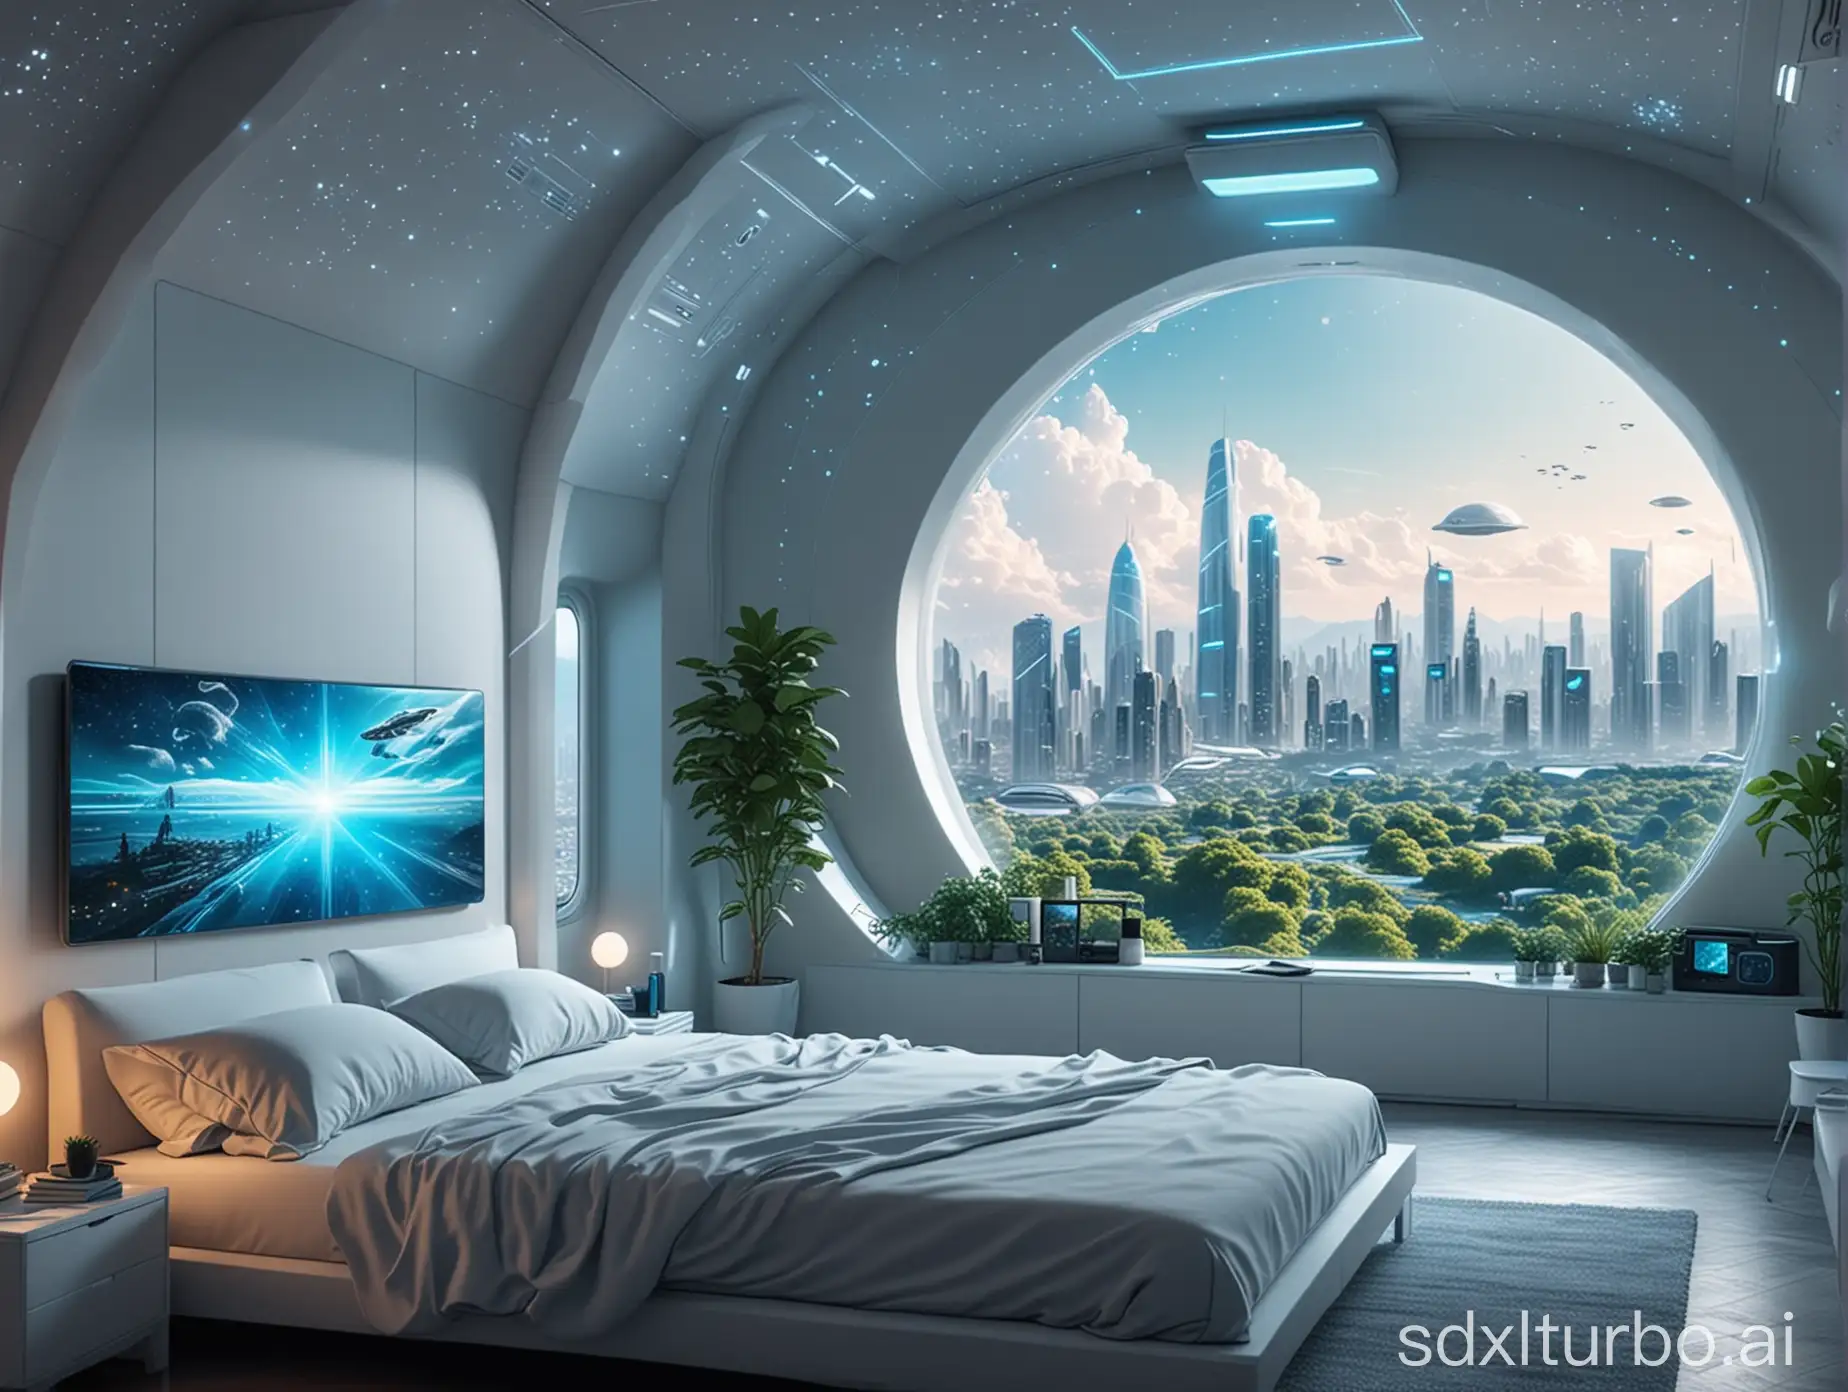 科幻卧室 白色和淡蓝色调  男人与全息投影智能管家交谈 星空穹顶  未来城市天际线 空中自主飞行器 8k画质 现实风格 窗外城市绿植